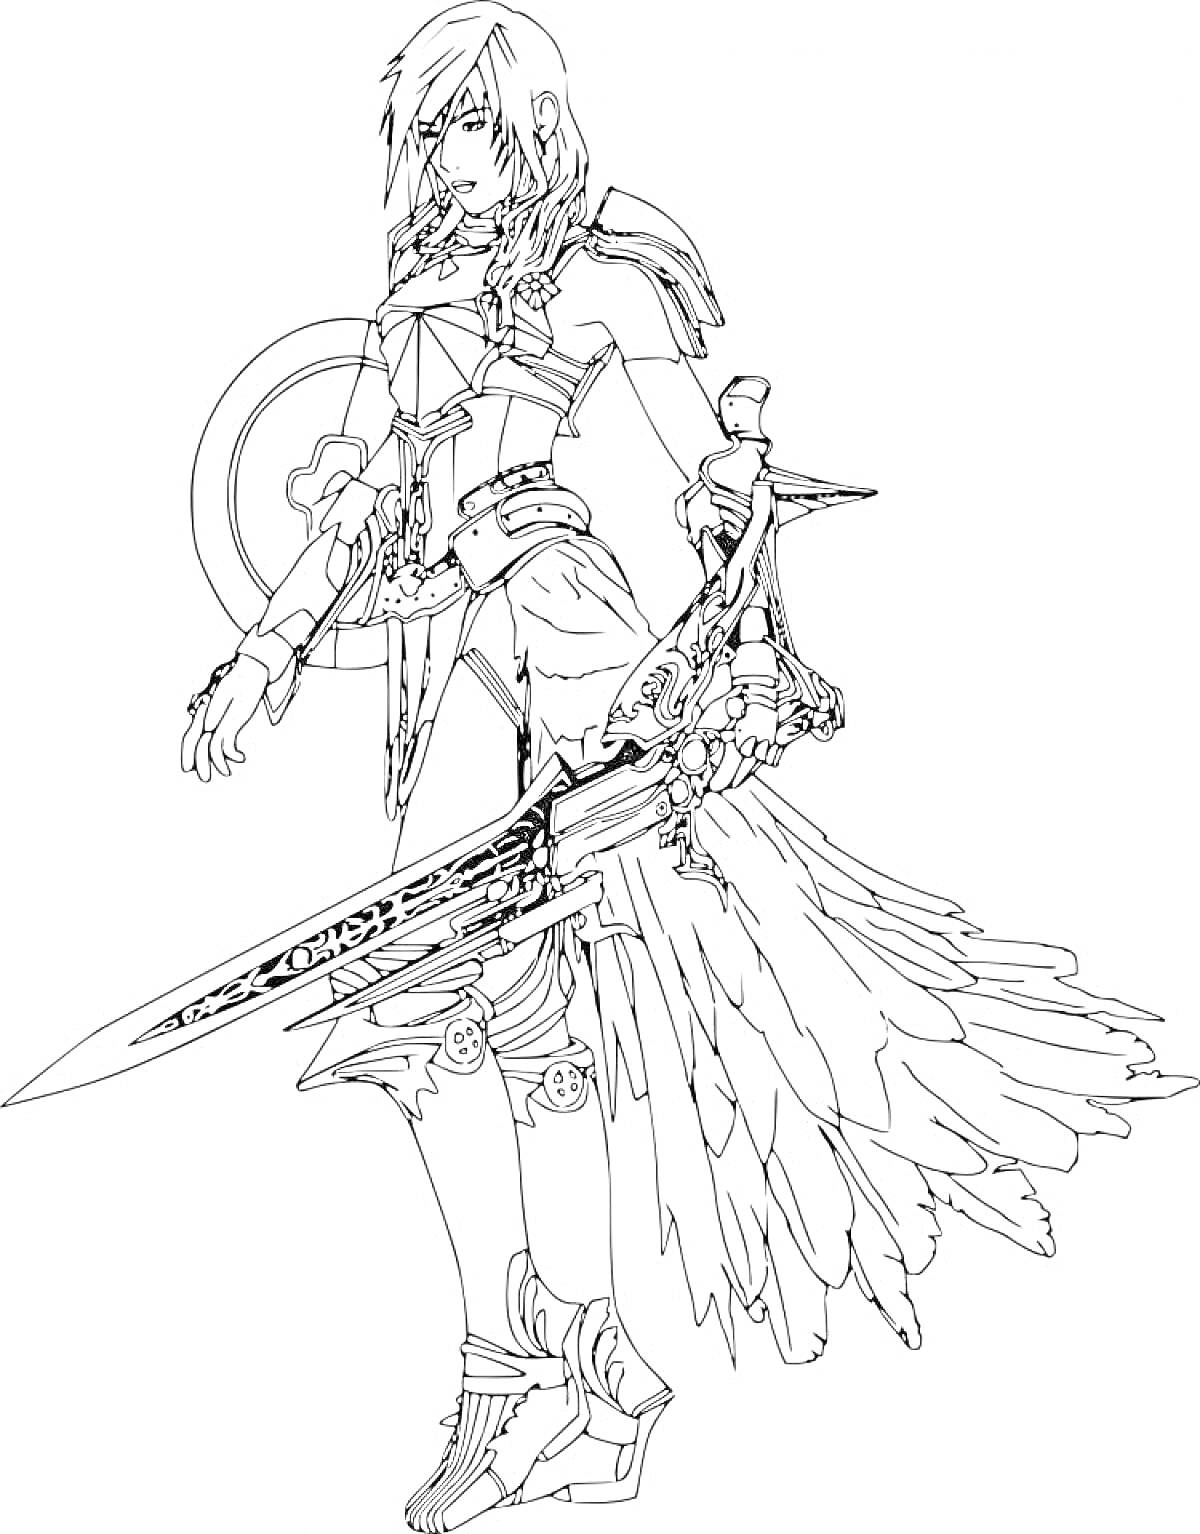 Раскраска Персонаж Gacha Life с длинными волосами, в боевом костюме с доспехами, щитом, мечами и перьями на юбке